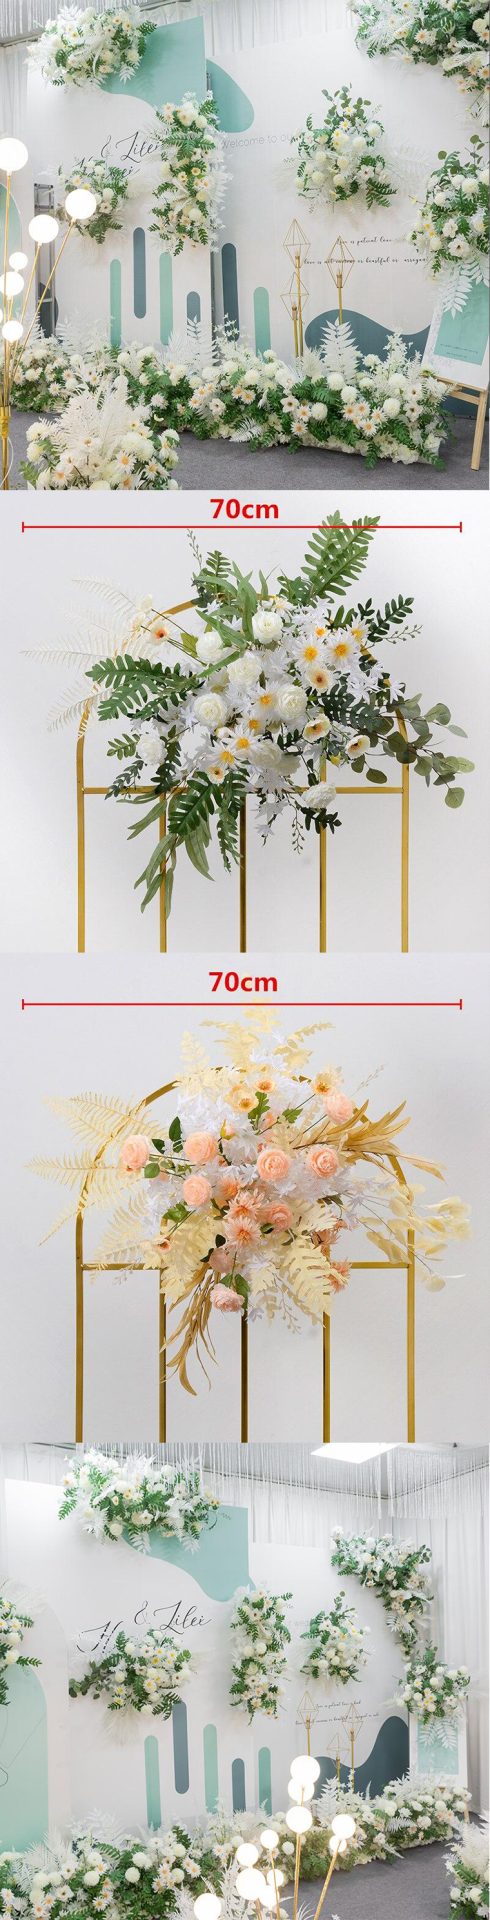 fake wedding floral